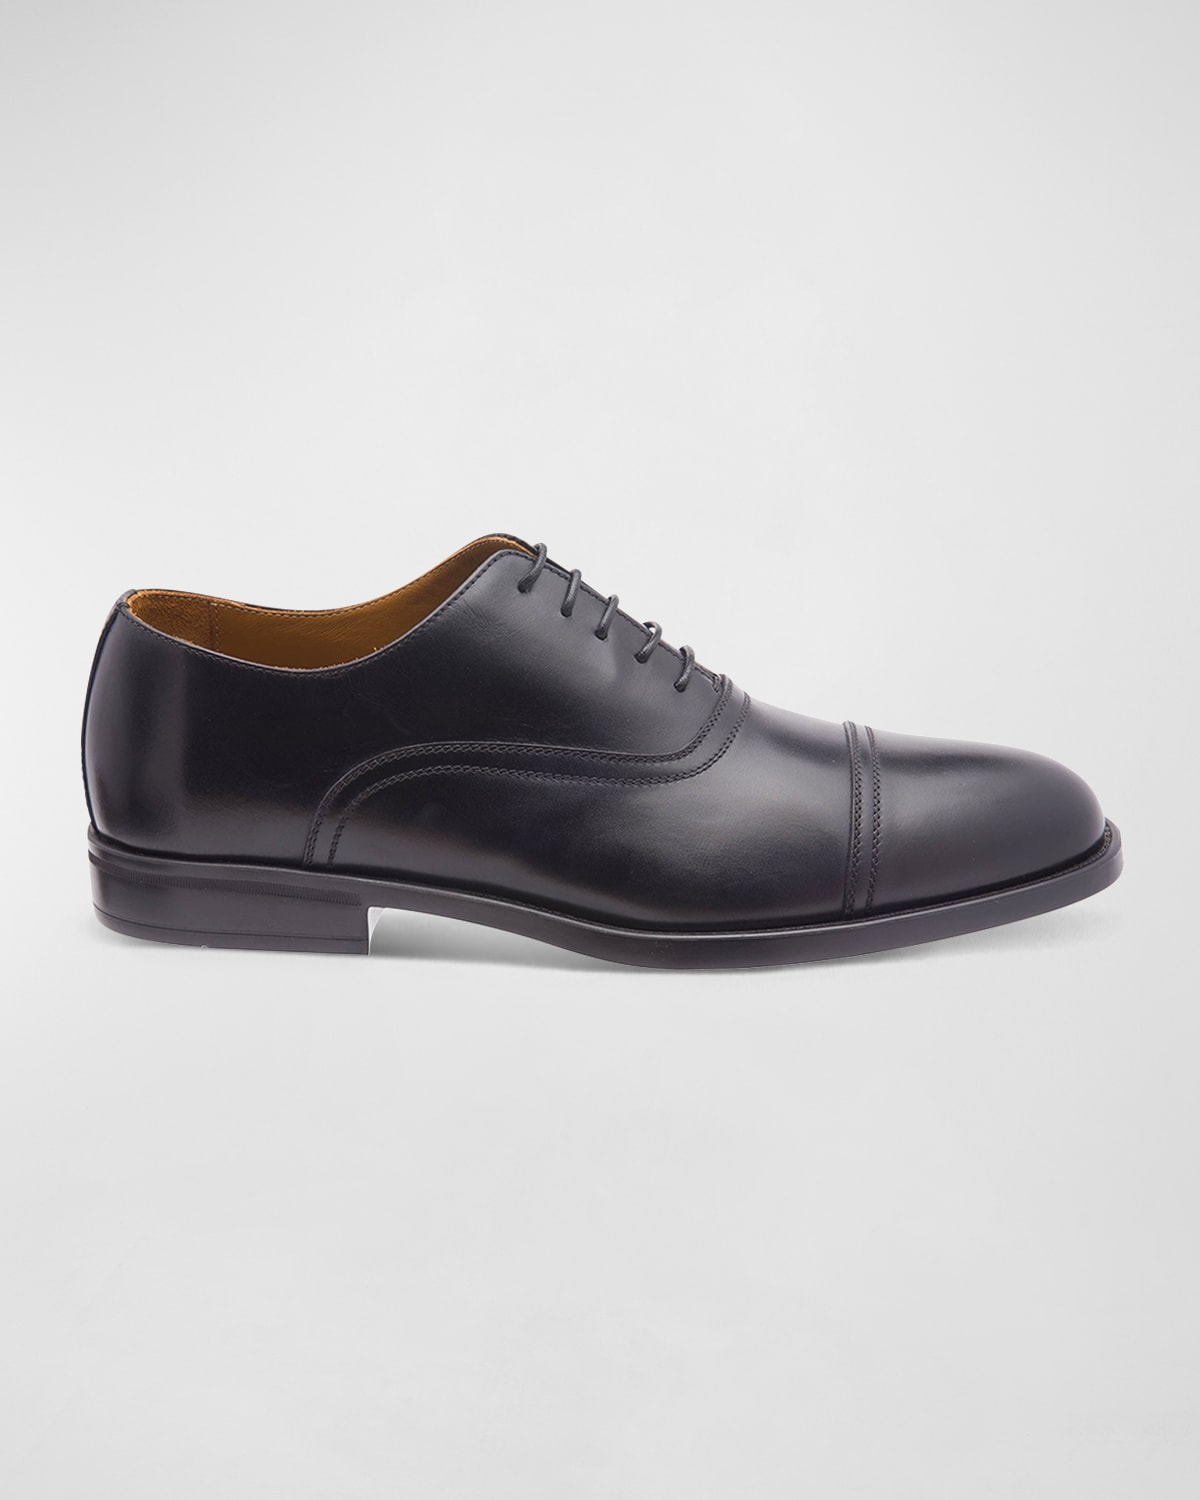 Shop Bruno Magli Men's Butler Burnished Leather Oxford Shoes In Black